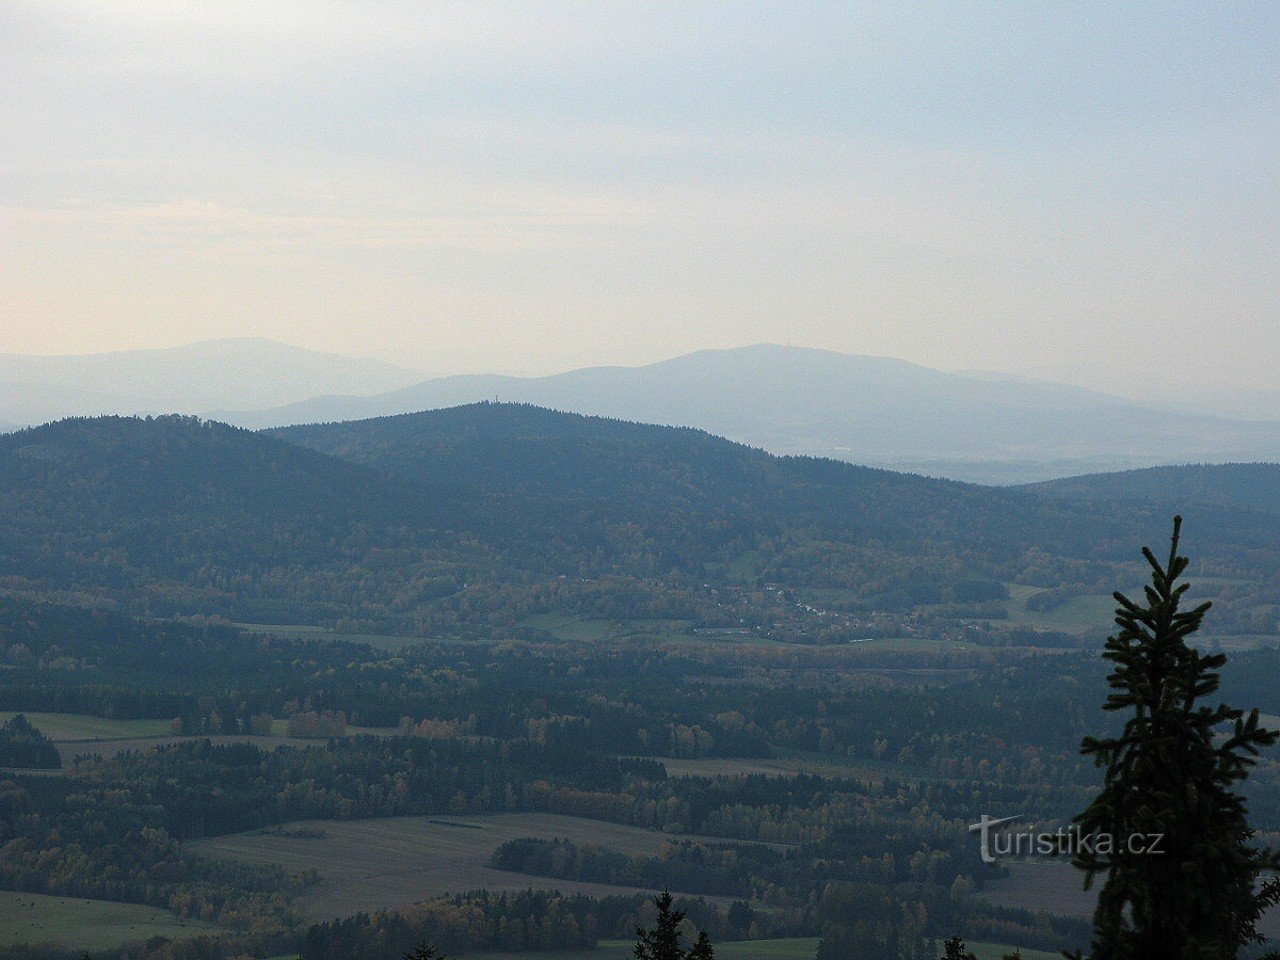 Slepíčí hory van Kráví hora (Kleť op de achtergrond)